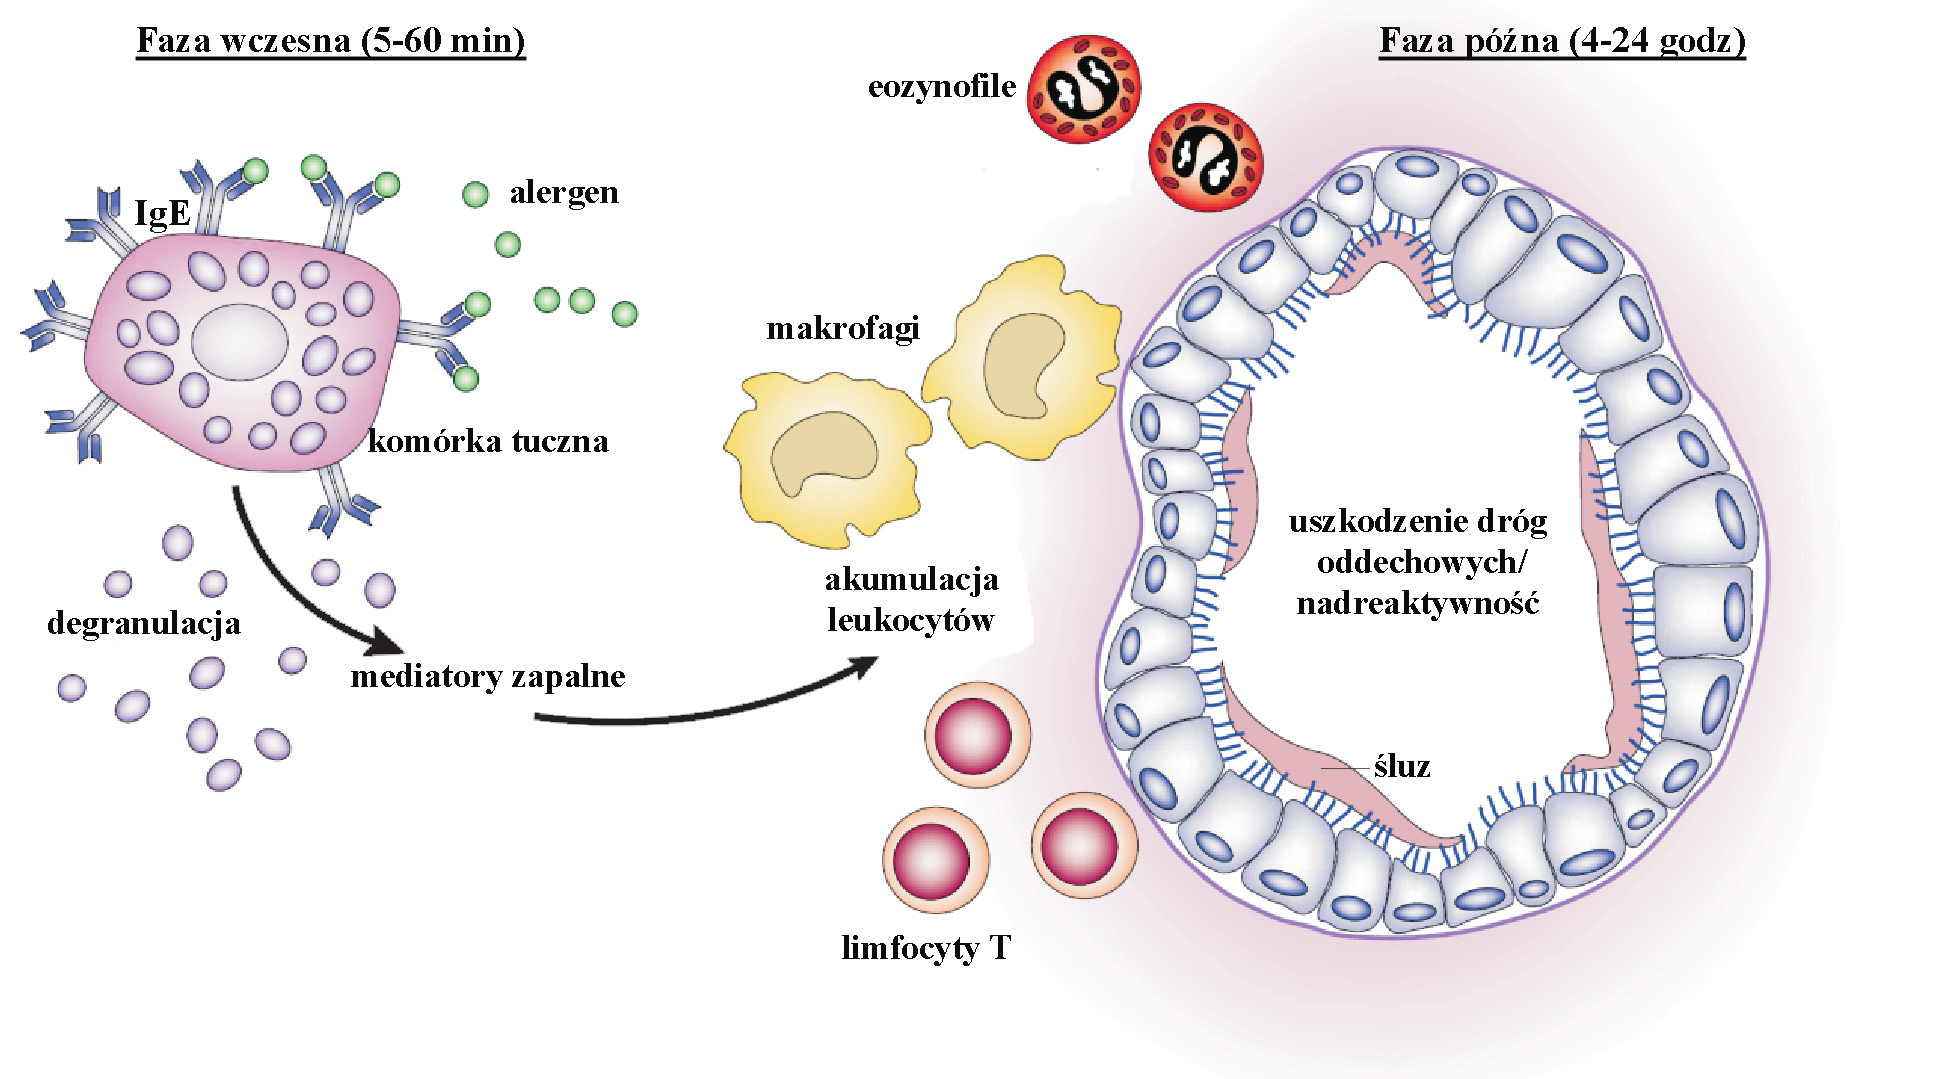 Rola chemokin w astmie Faza wczesna (5-60 min) eozynofile Faza późna (4-24 godz) IgE alergen makrofagi komórka tuczna degranulacja mediatory zapalne akumulacja leukocytów uszkodzenie dróg